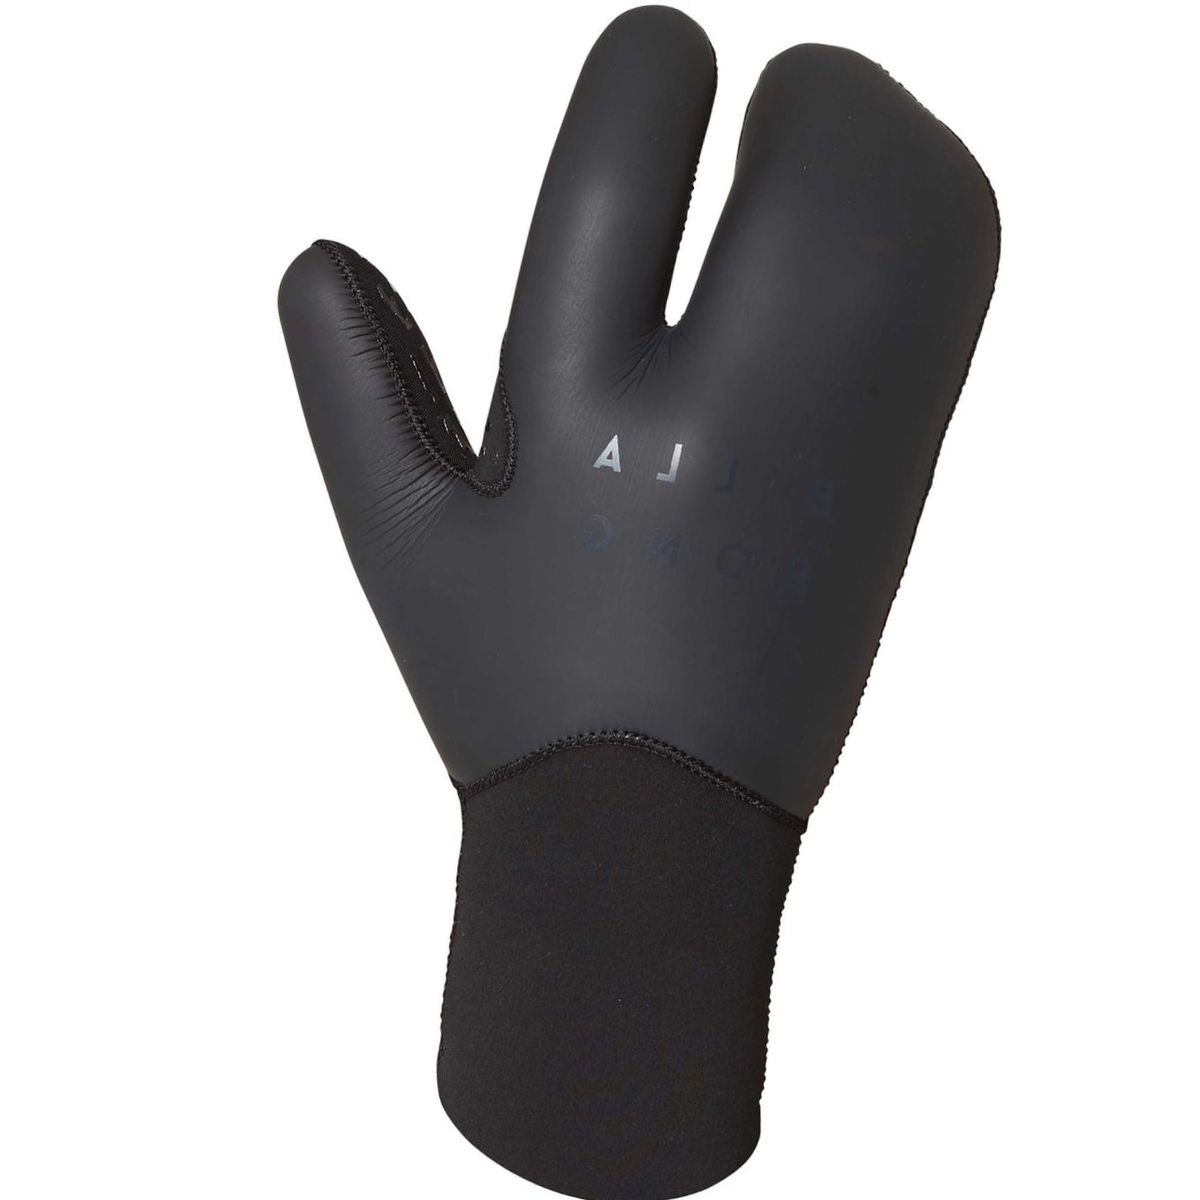 Billabong 7mm Furnace Carbon Claw Glove - Men's